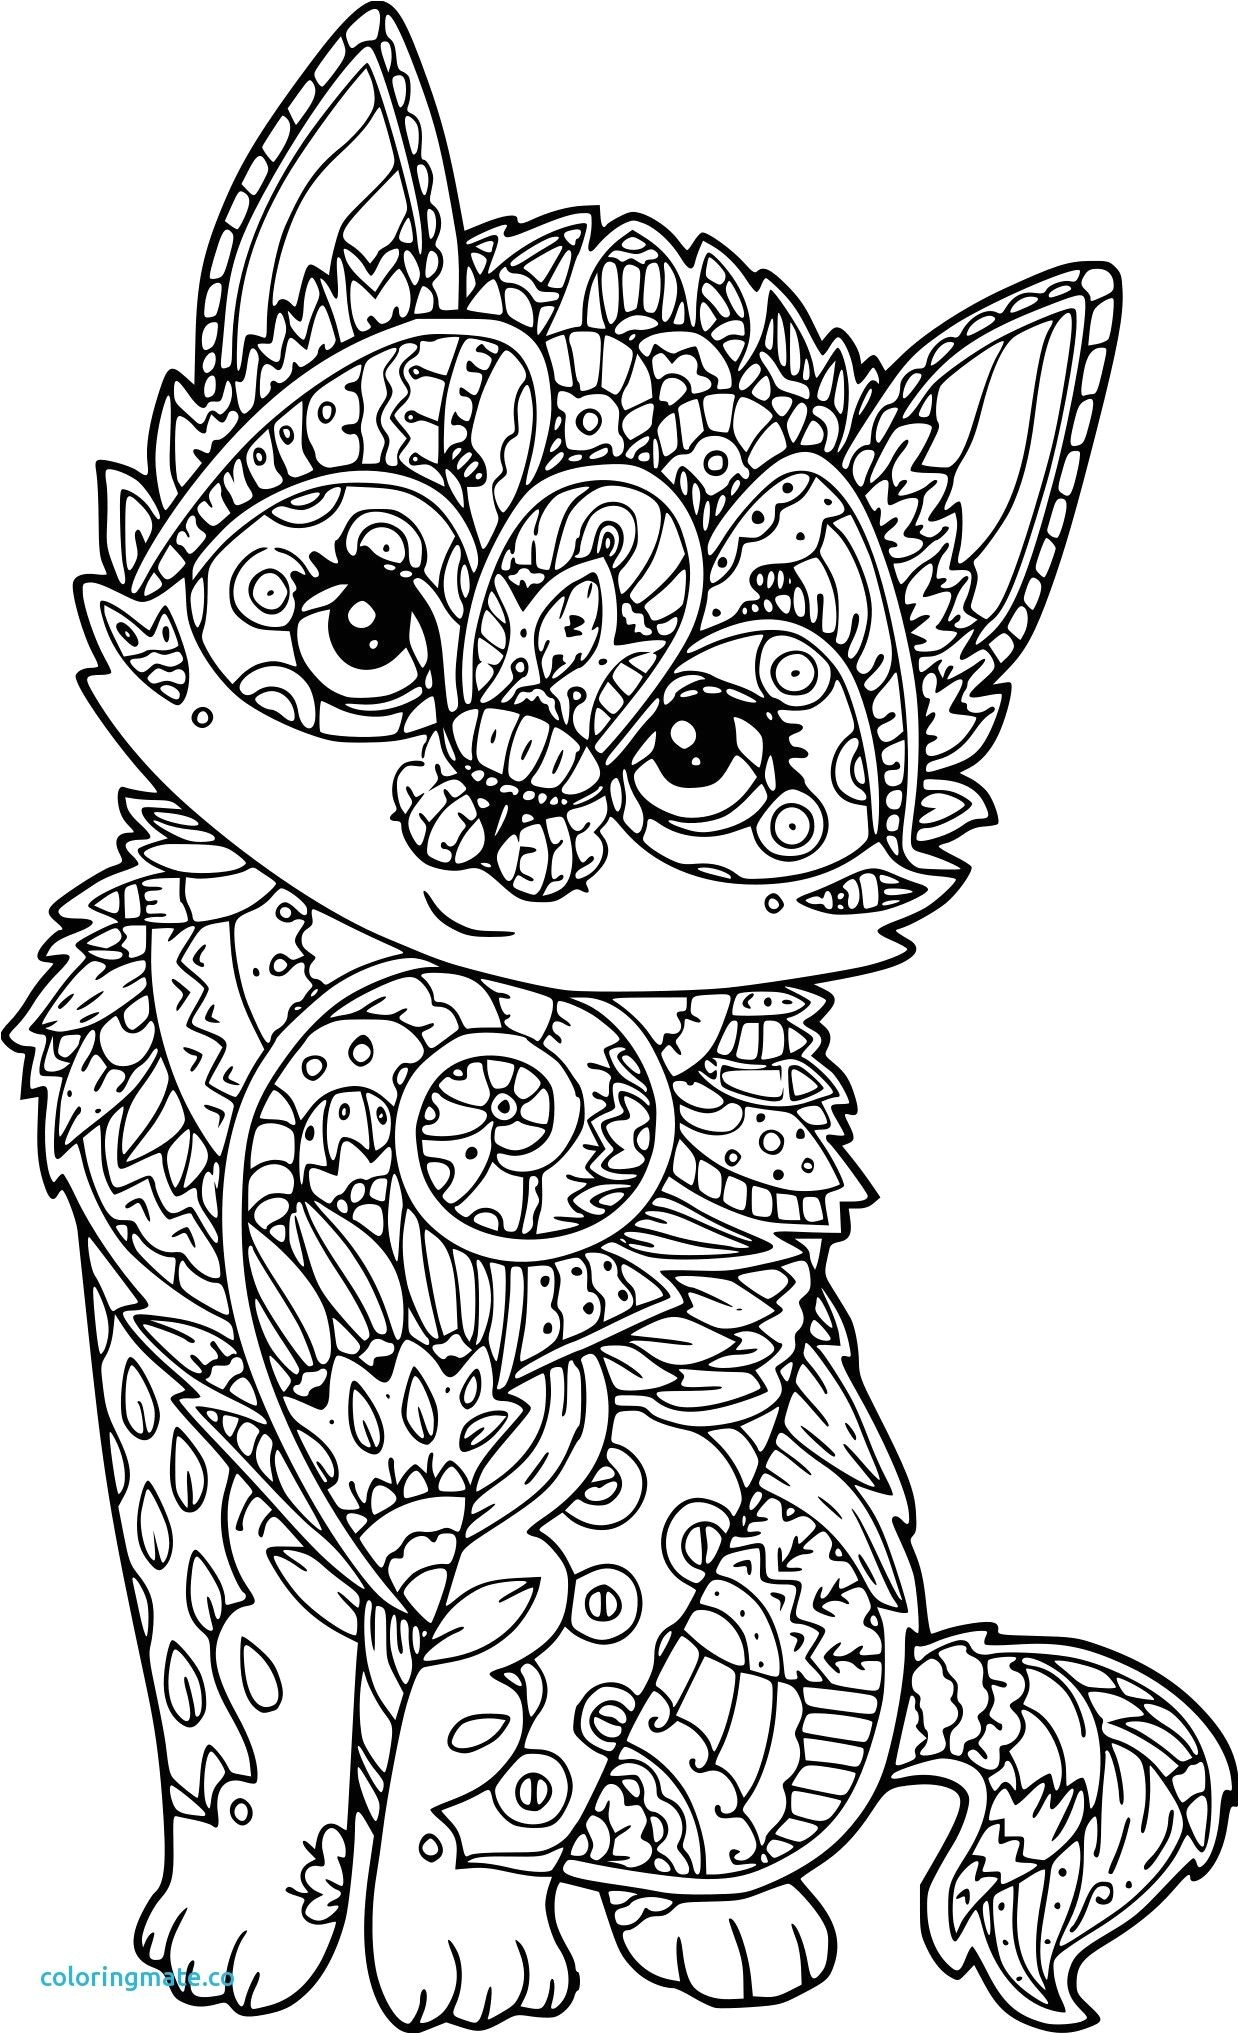 Coloriage mandala chat papillon fresh coloriage chat antistress a imprimer sur coloriages info Coloriage mandala a imprimer